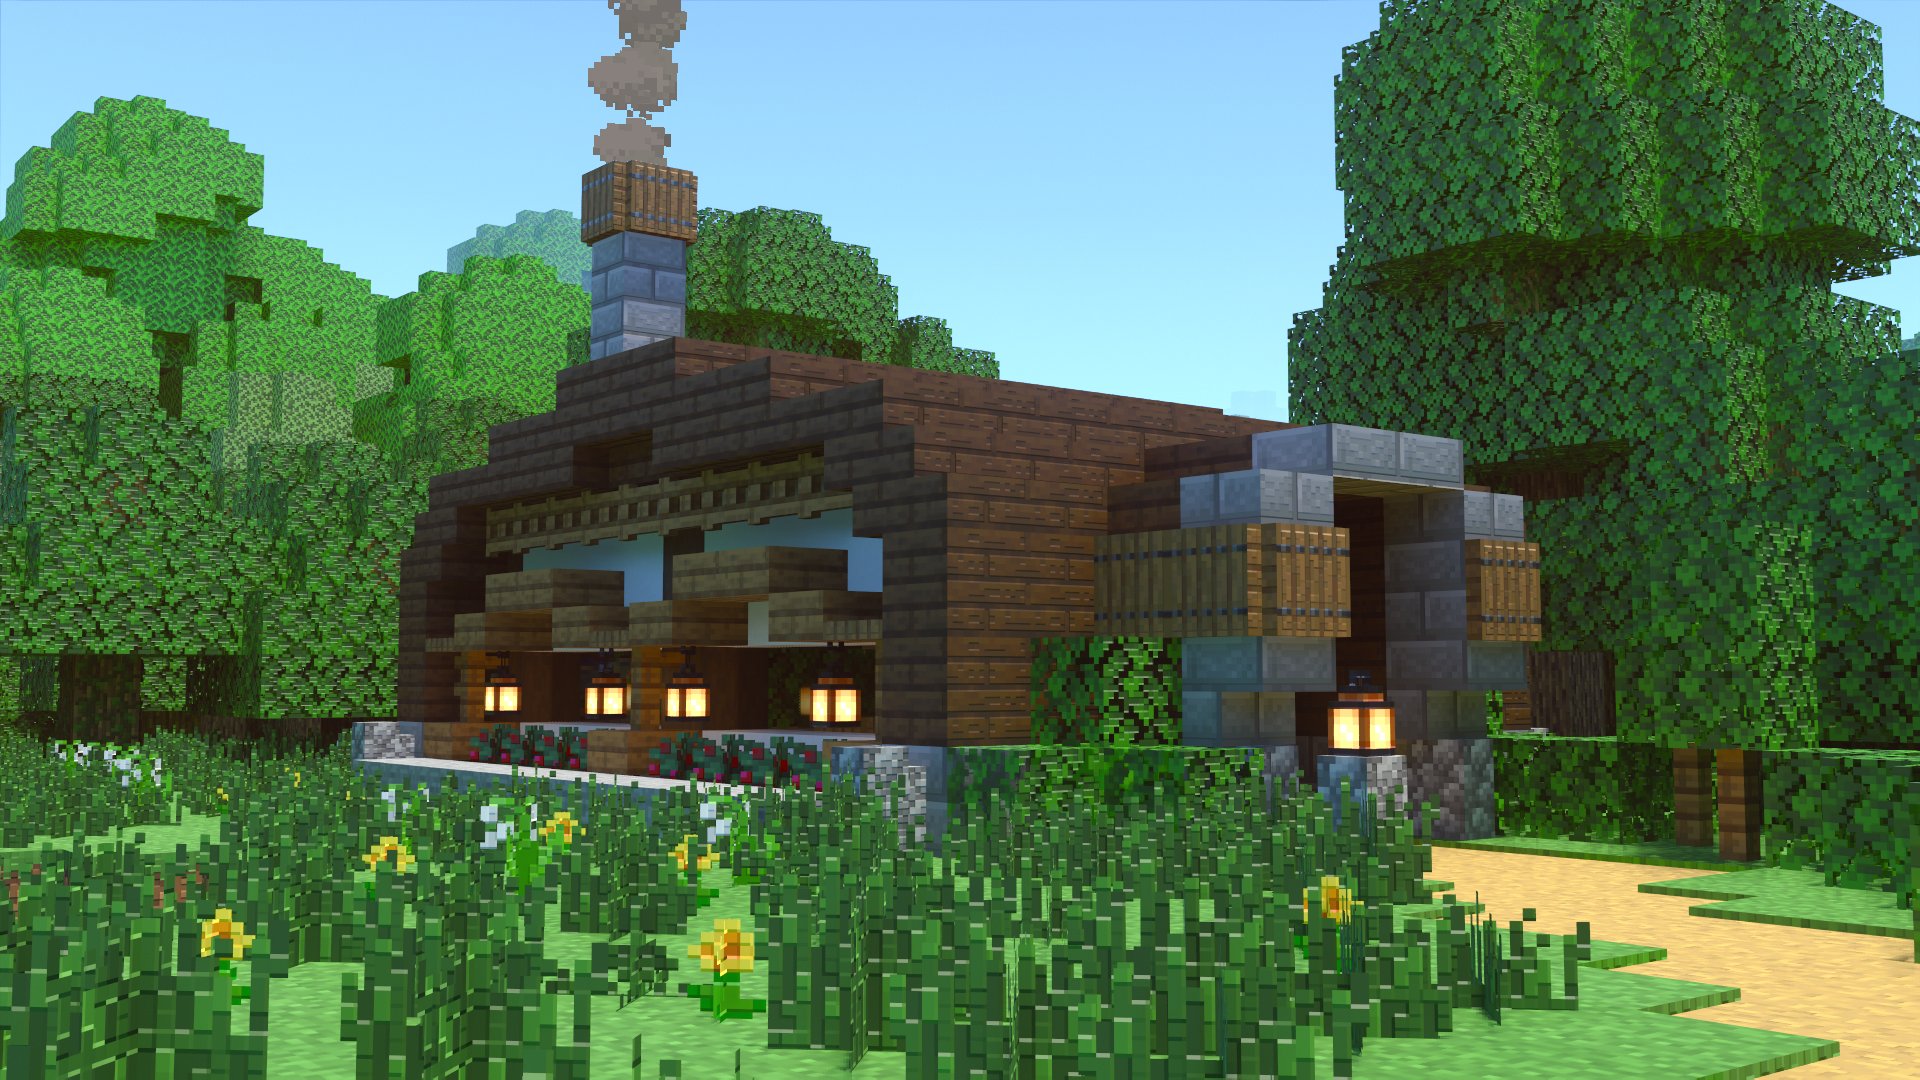 טוויטר こぐまぷろ Kogumapro בטוויטר 森の中にある丸屋根の家を作ってみました 入り口部分もドームにしてみましたが かまくらみたいで結構かわいいですねぇ ドワーフとか住んでそうな雰囲気がします マイクラ Minecraft建築コミュ マインクラフト Minecraft